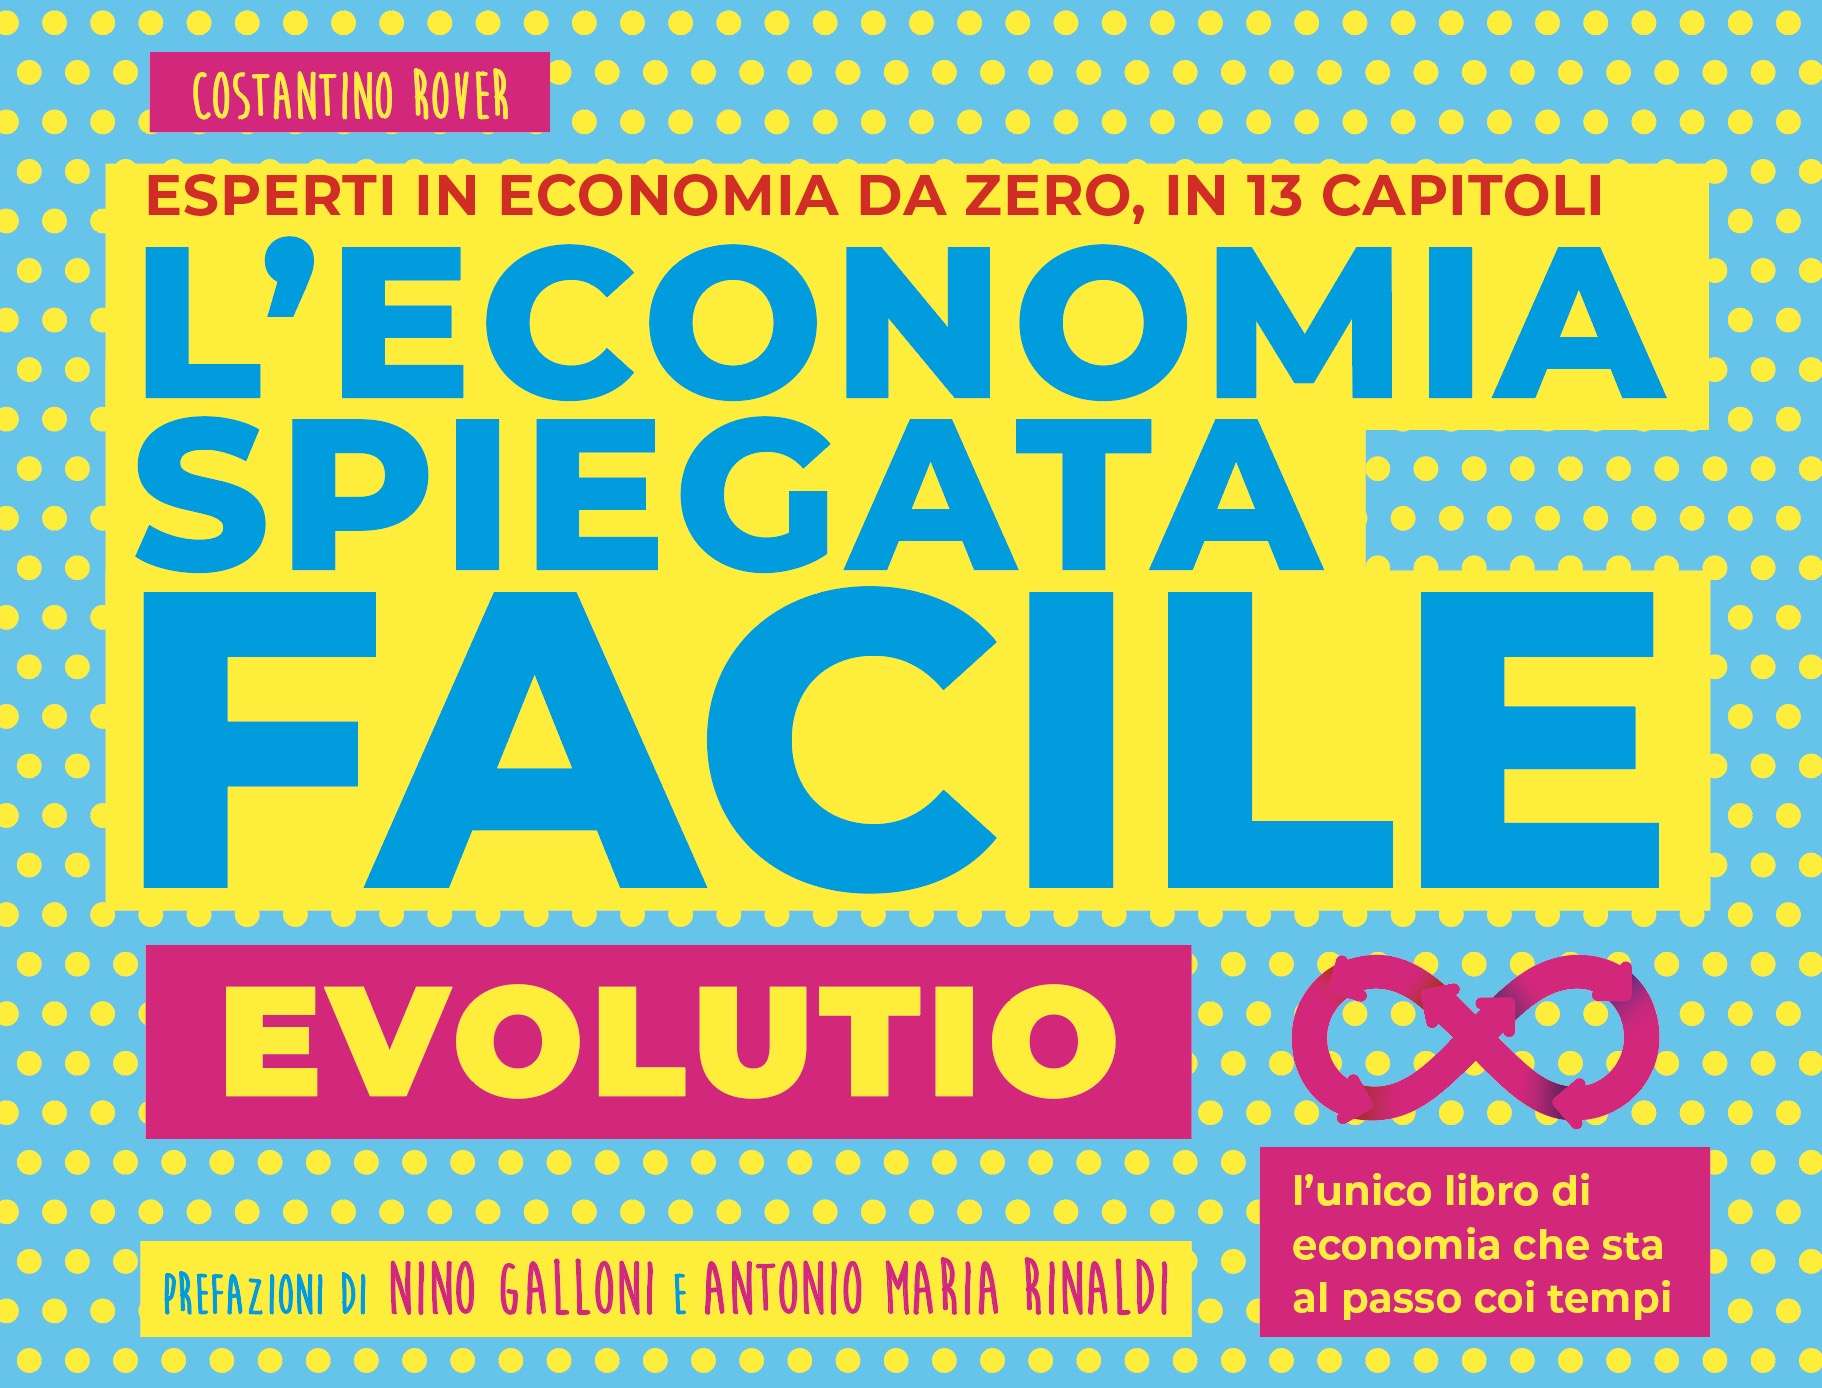 cover e-book economia spiegata facile evolutio. Versione da consultare online